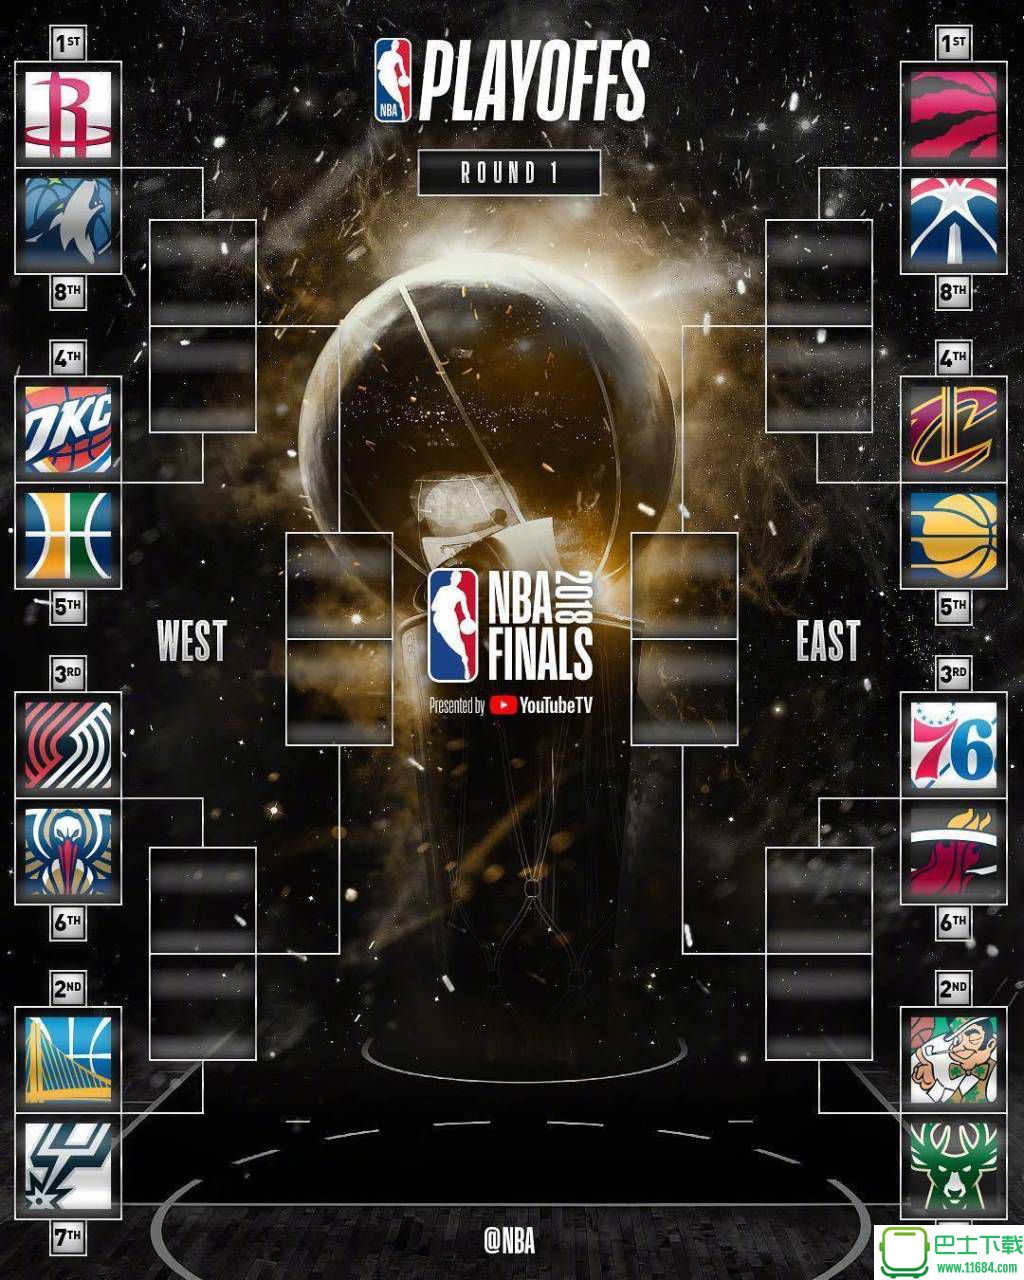 2017-2018赛季NBA季后赛首轮8组对决赛程表下载-2017-2018赛季NBA季后赛首轮8组对决赛程表 中文版下载